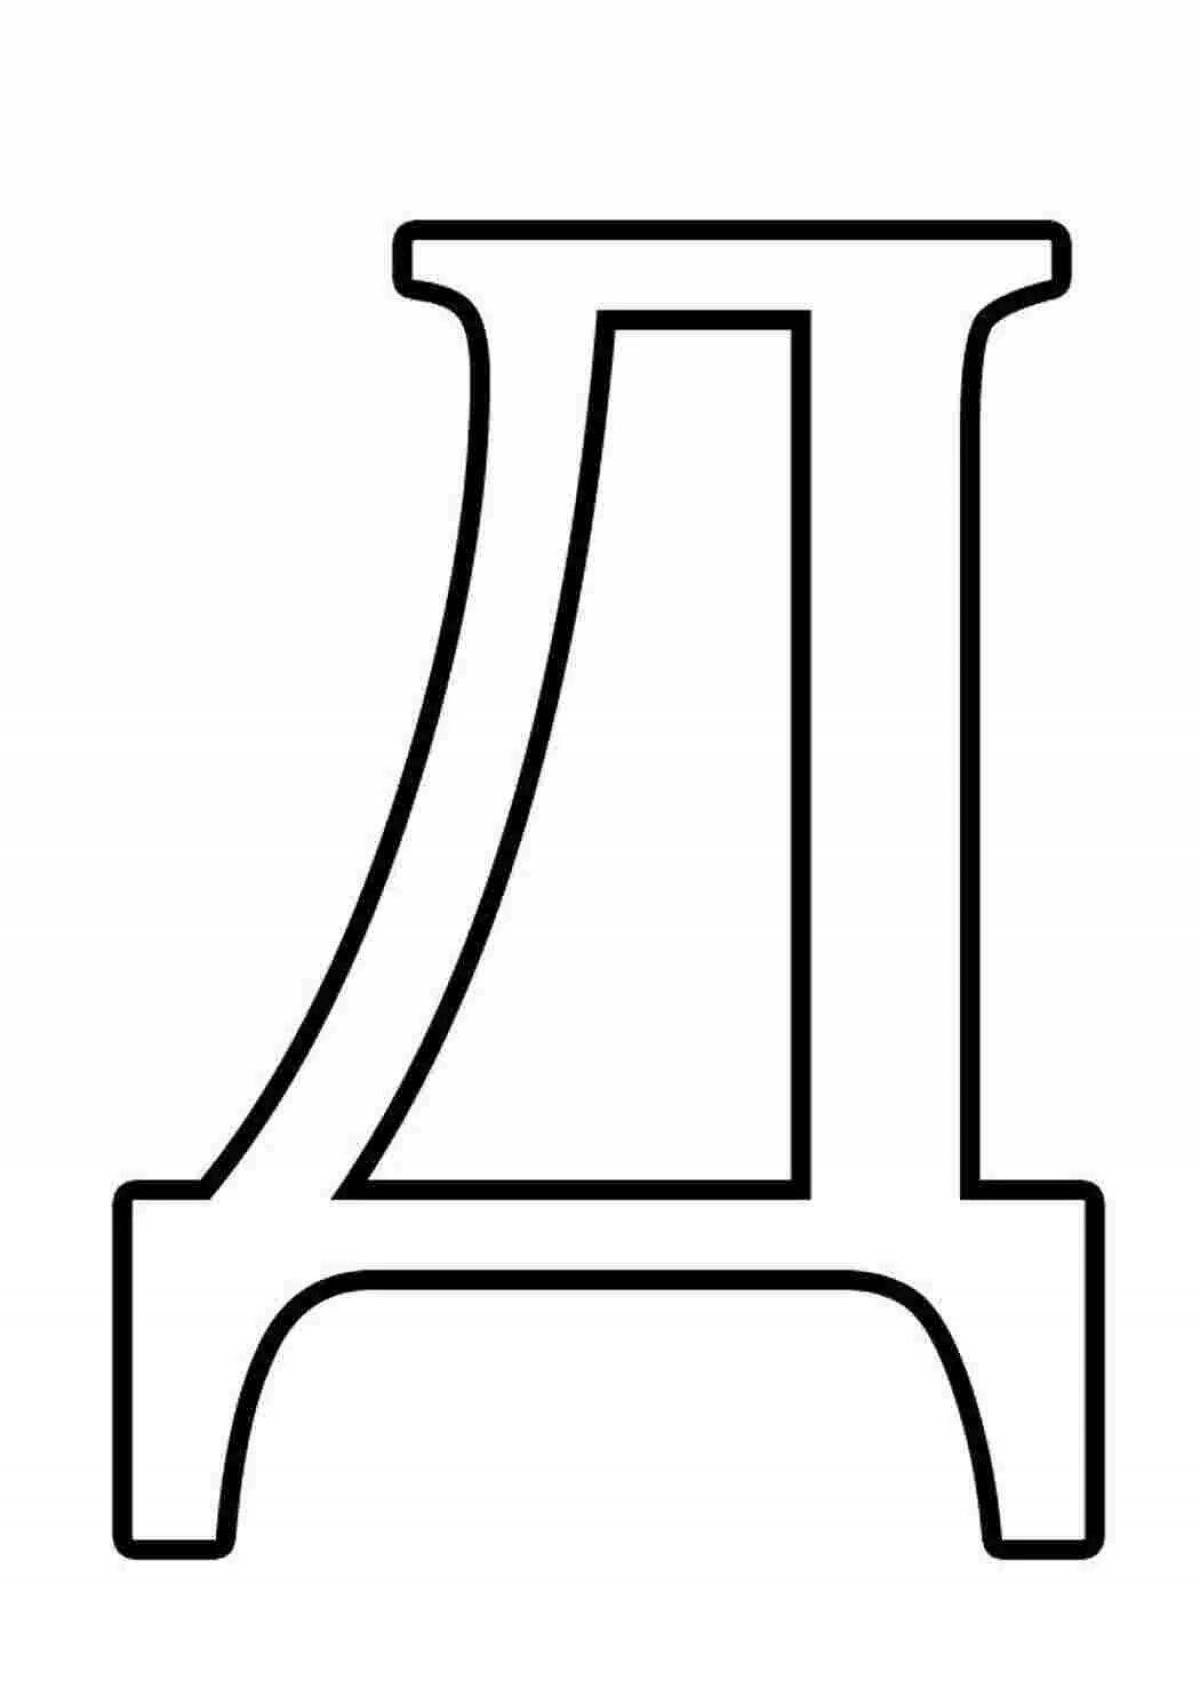 Д длю. Буква в большая а4. Трафарет букв. Буква д. Большие буквы для печати формата а4.